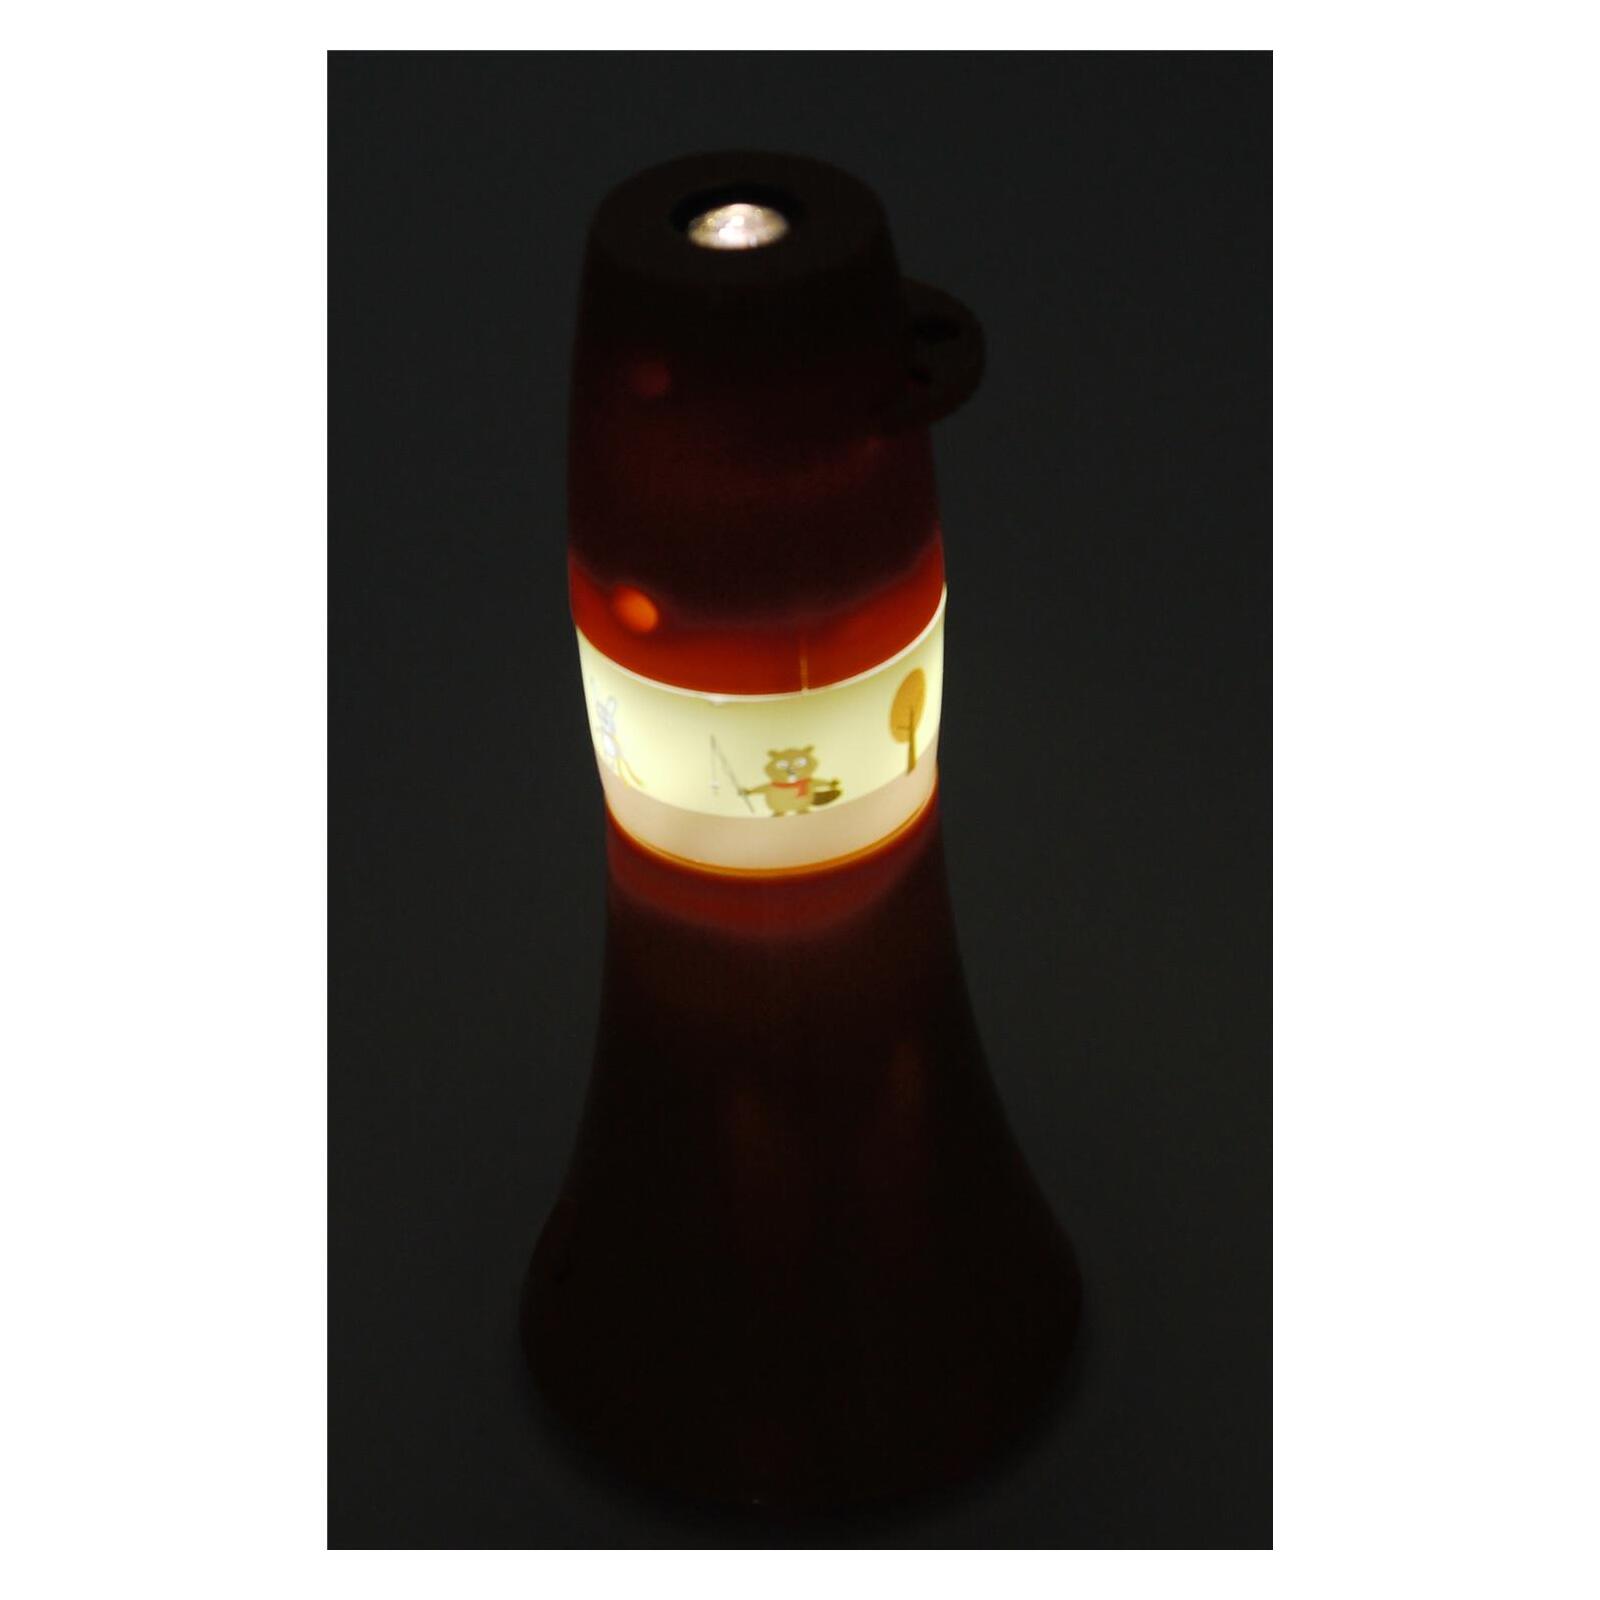 6 & Taschen-Projektor fach Waldtiere, Onlineshop Lampen - Leuchten